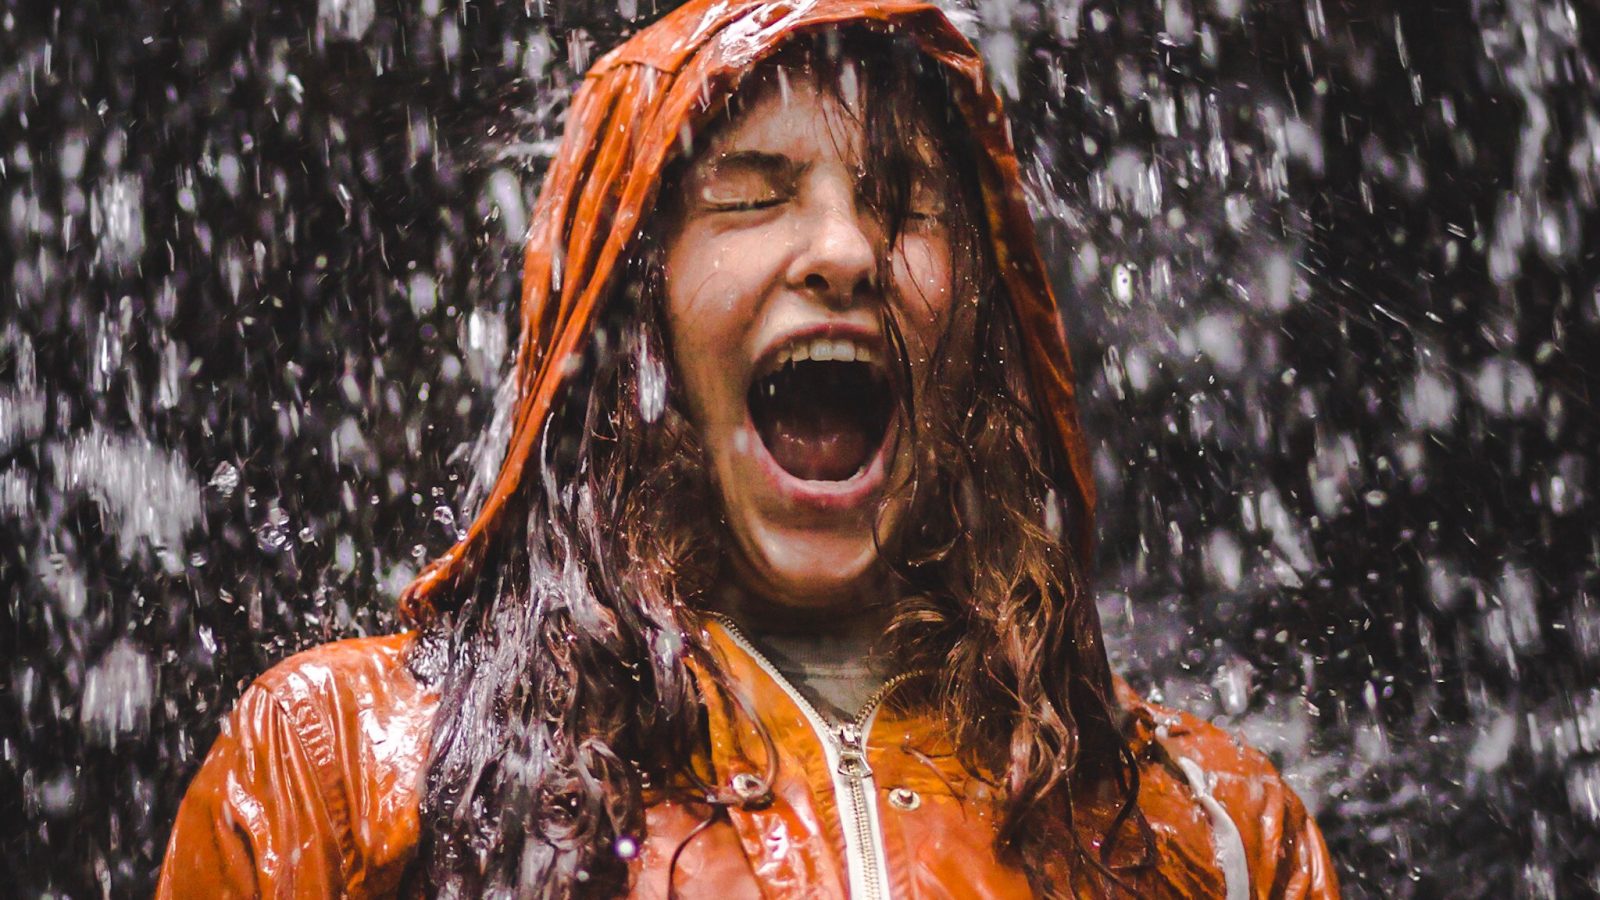 Maratona sotto la pioggia: 10 consigli pratici